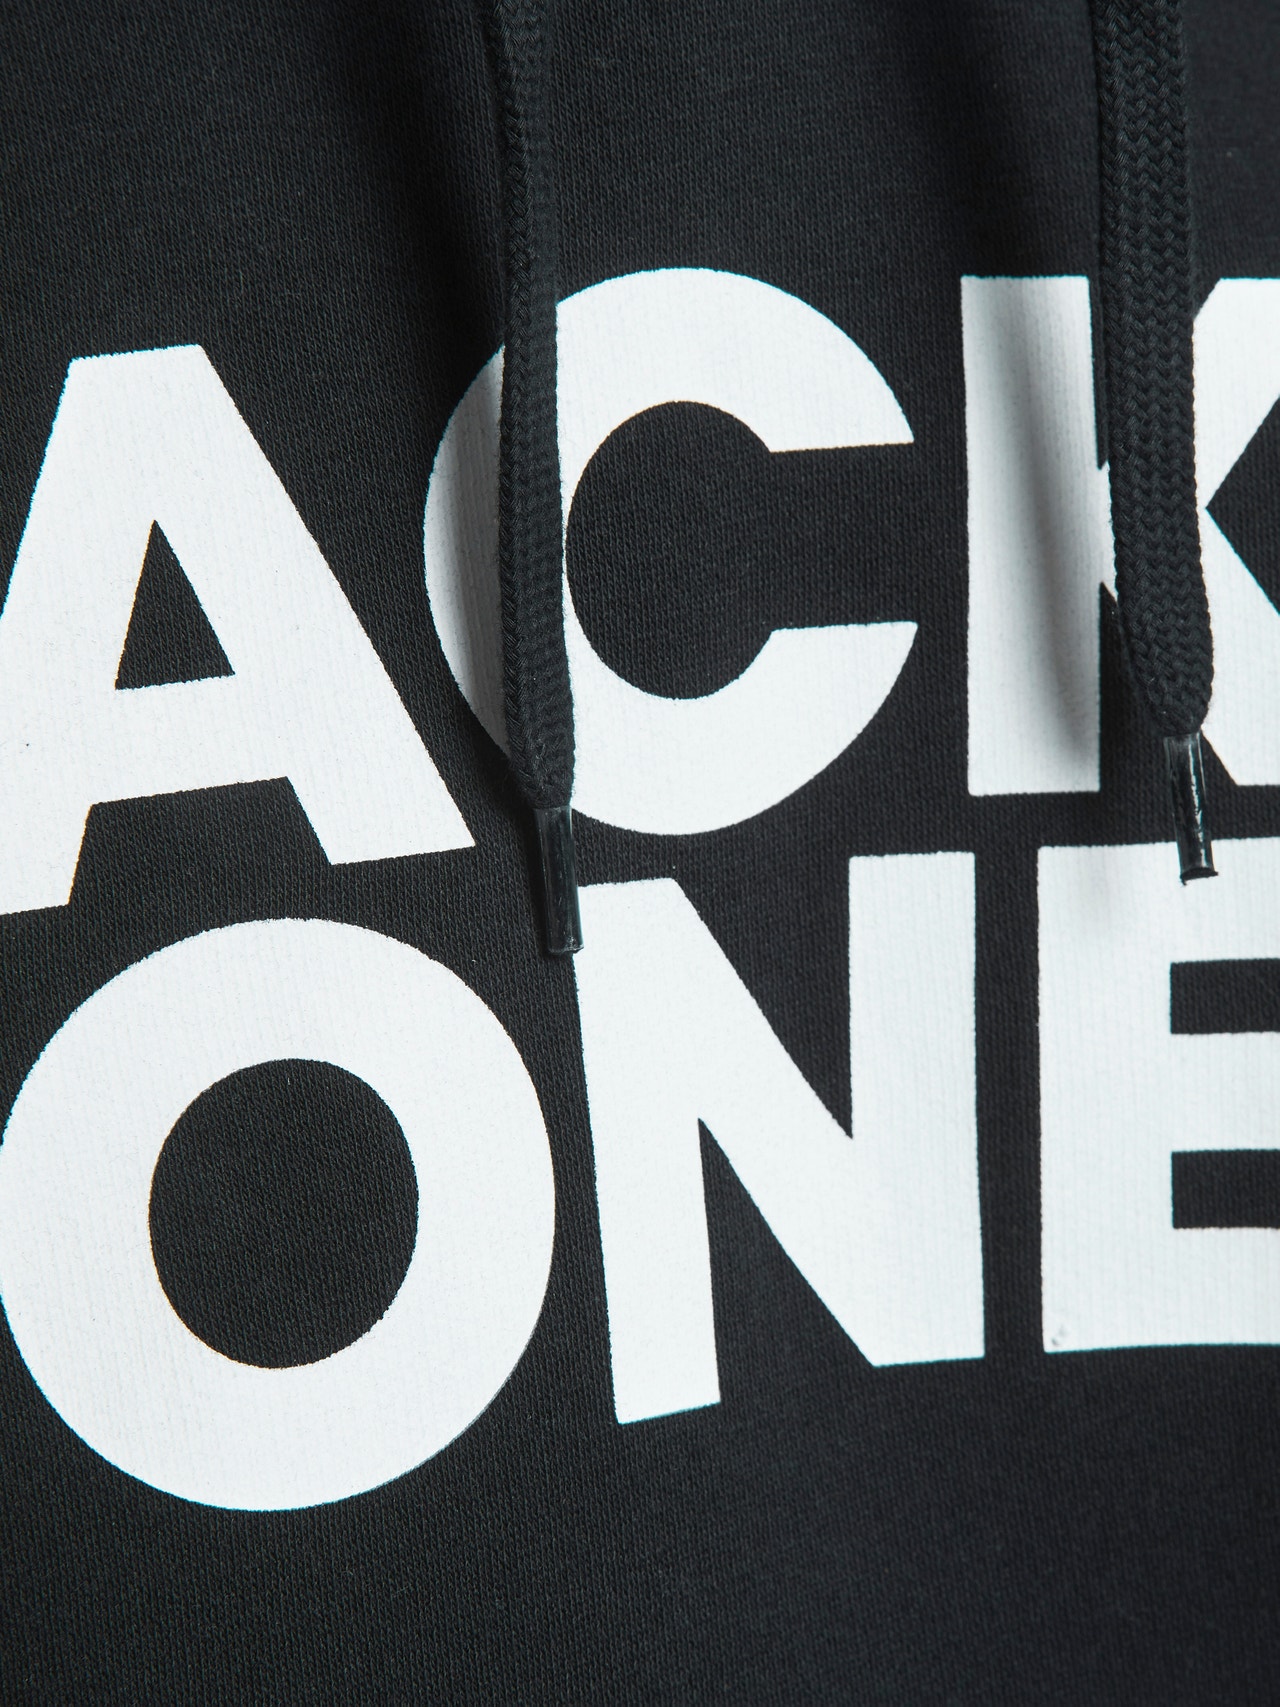 Jack & Jones 2er-pack Logo Kapuzenpullover -Black - 12191761